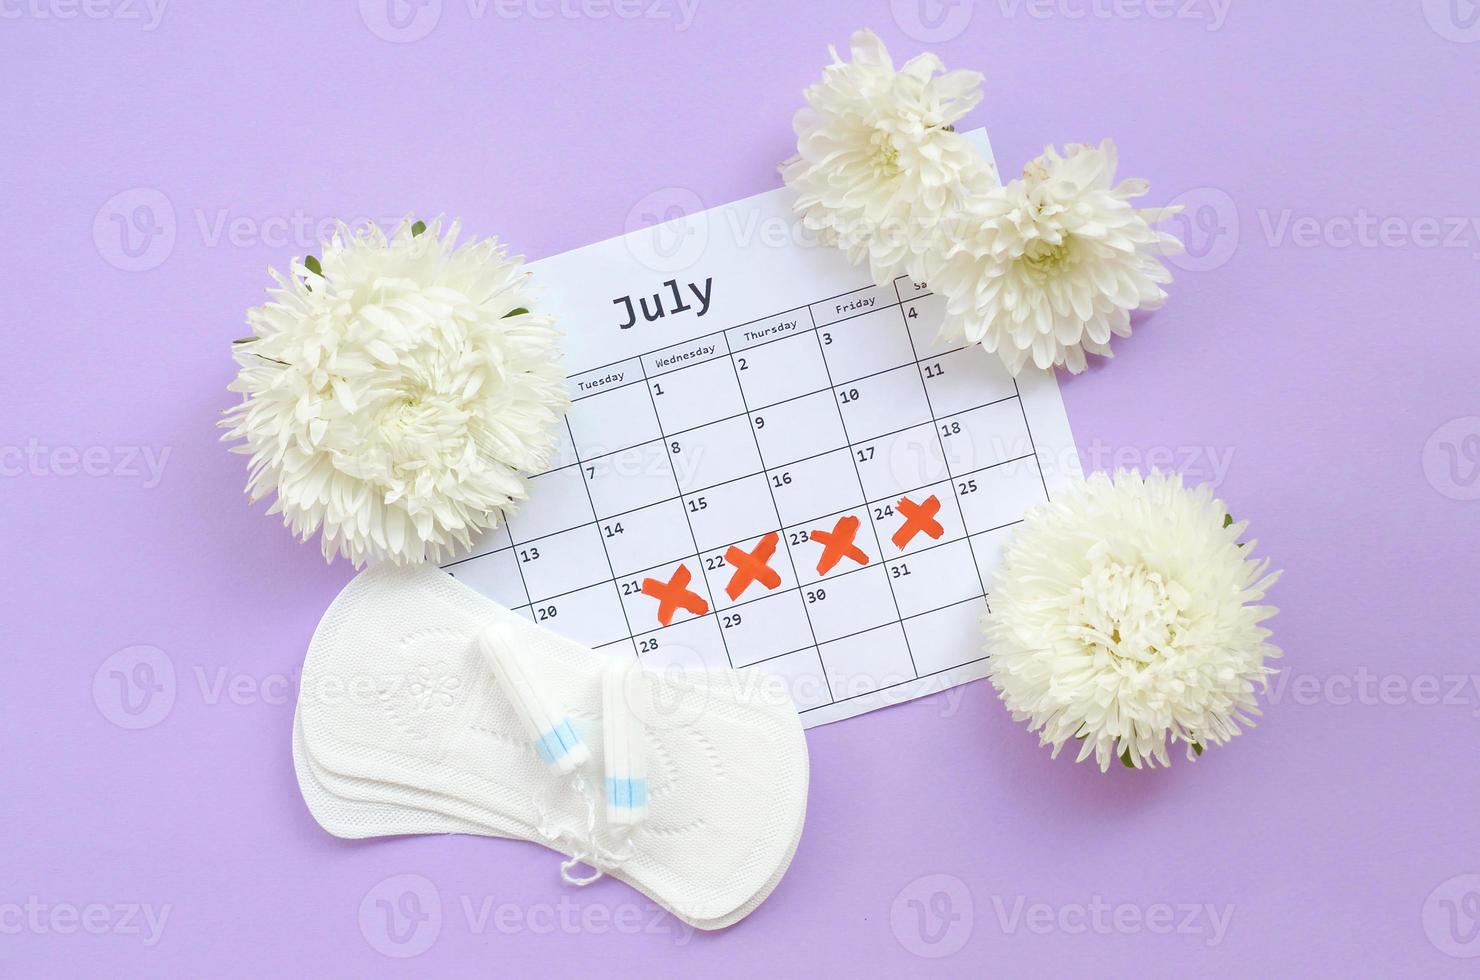 almohadillas menstruales y tampones en el calendario del período de menstruación con flores blancas sobre fondo lila foto